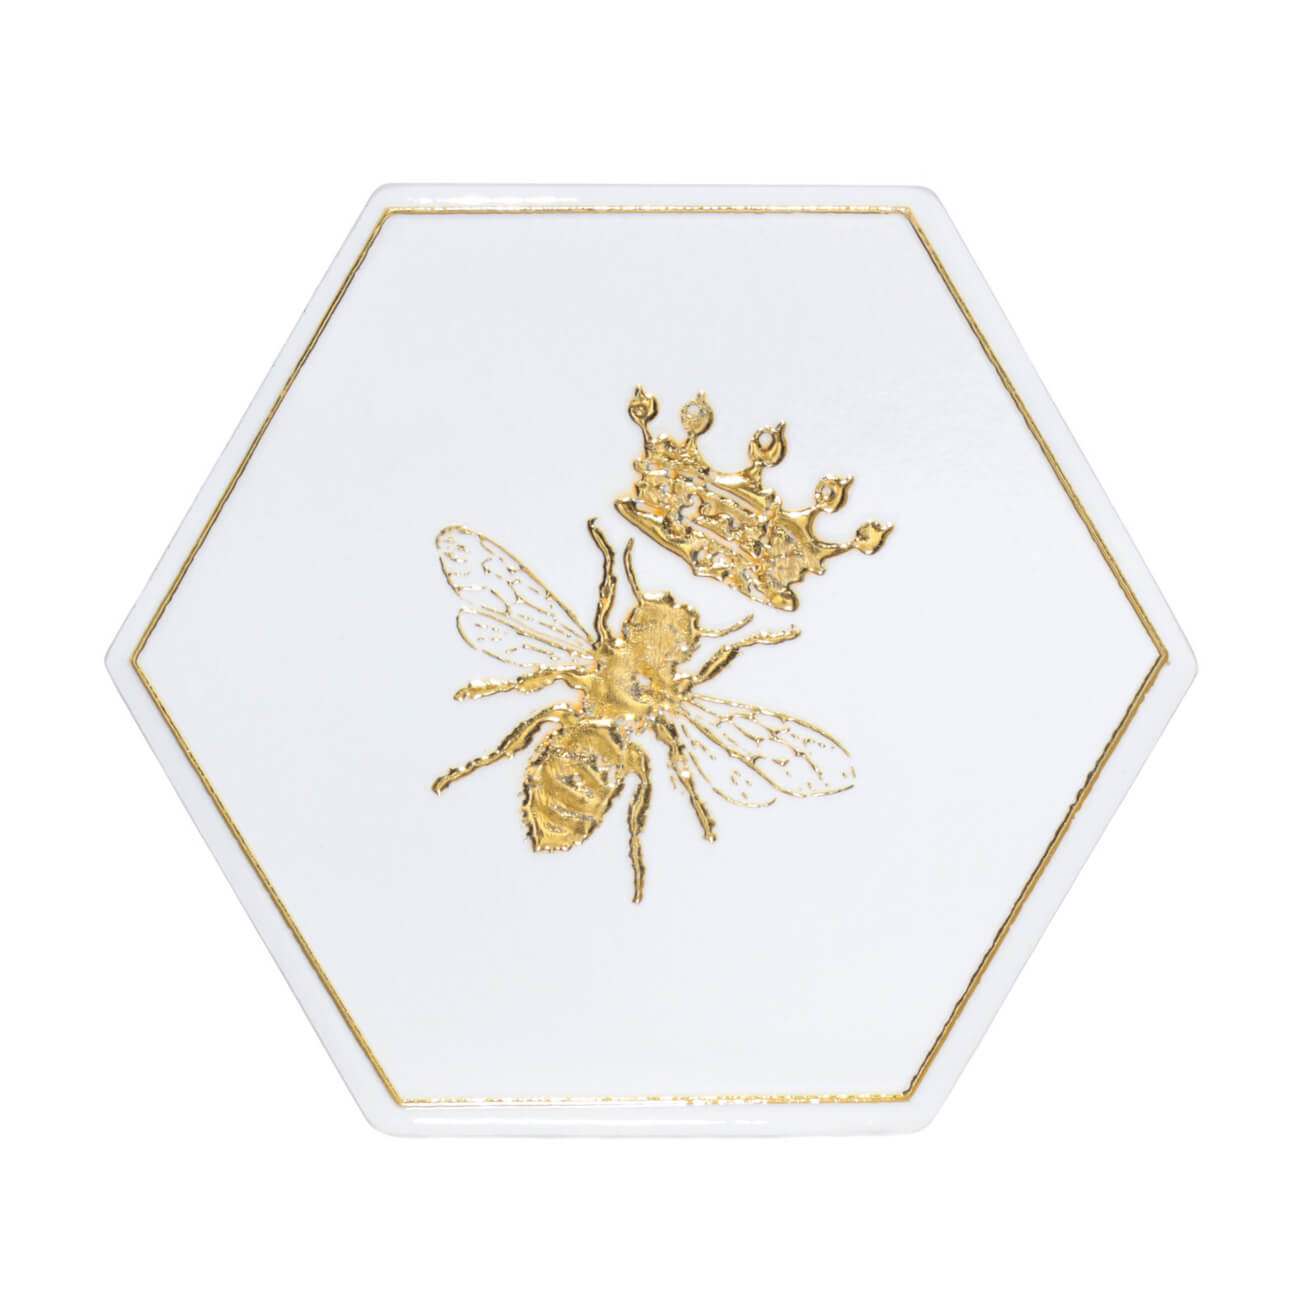 Подставка под кружку, 11 см, керамика/пробка, шестиугольная, белая, Королевская пчела, Honey